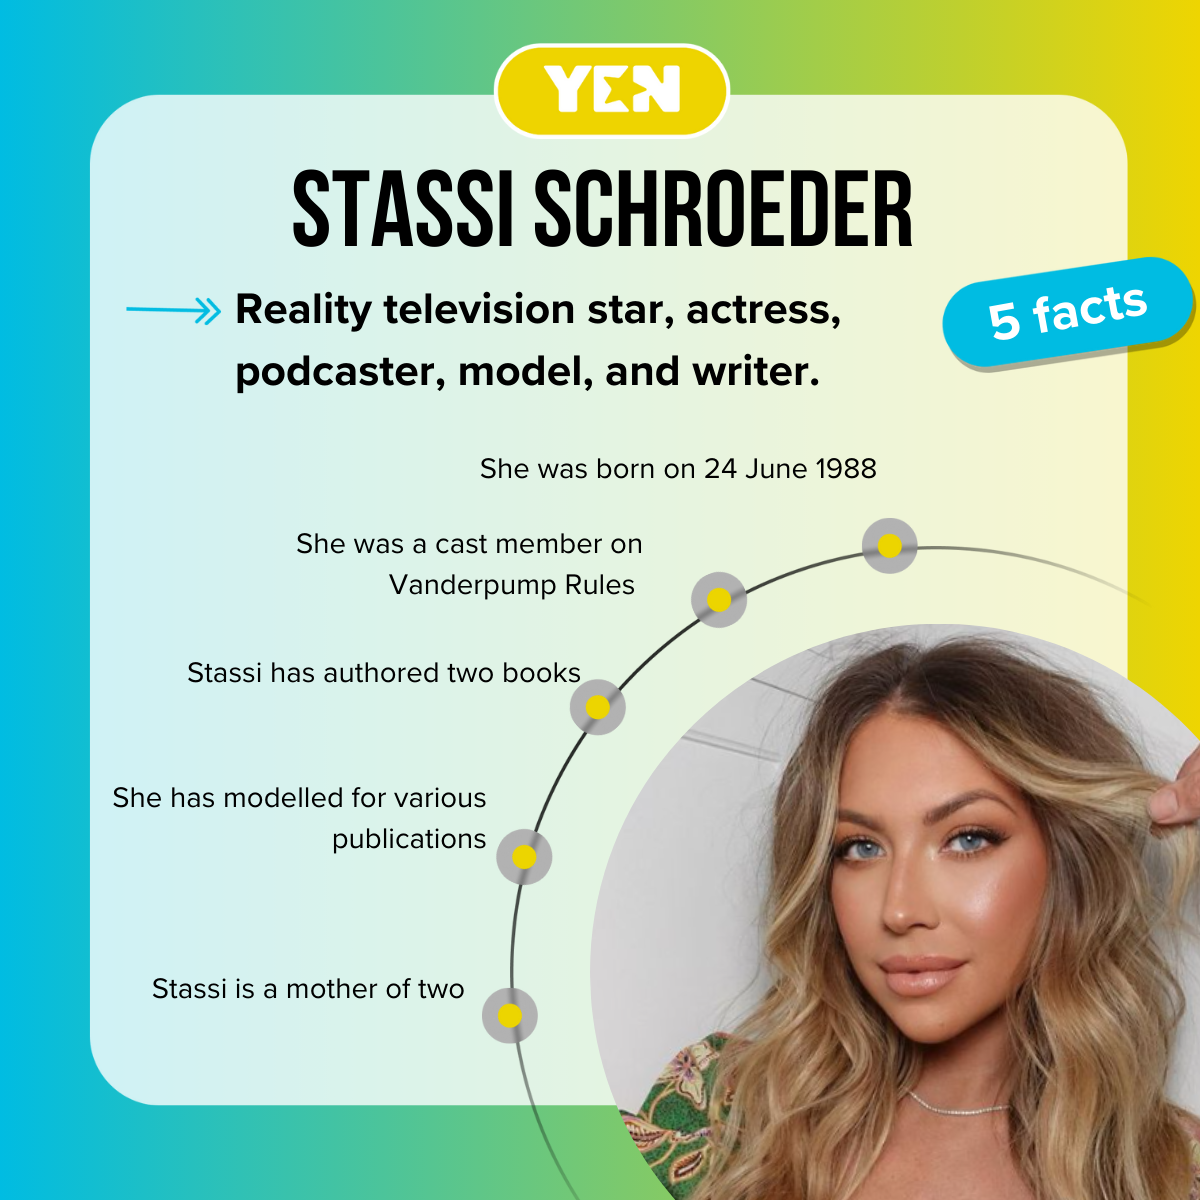 Facts about Stassi Schroeder